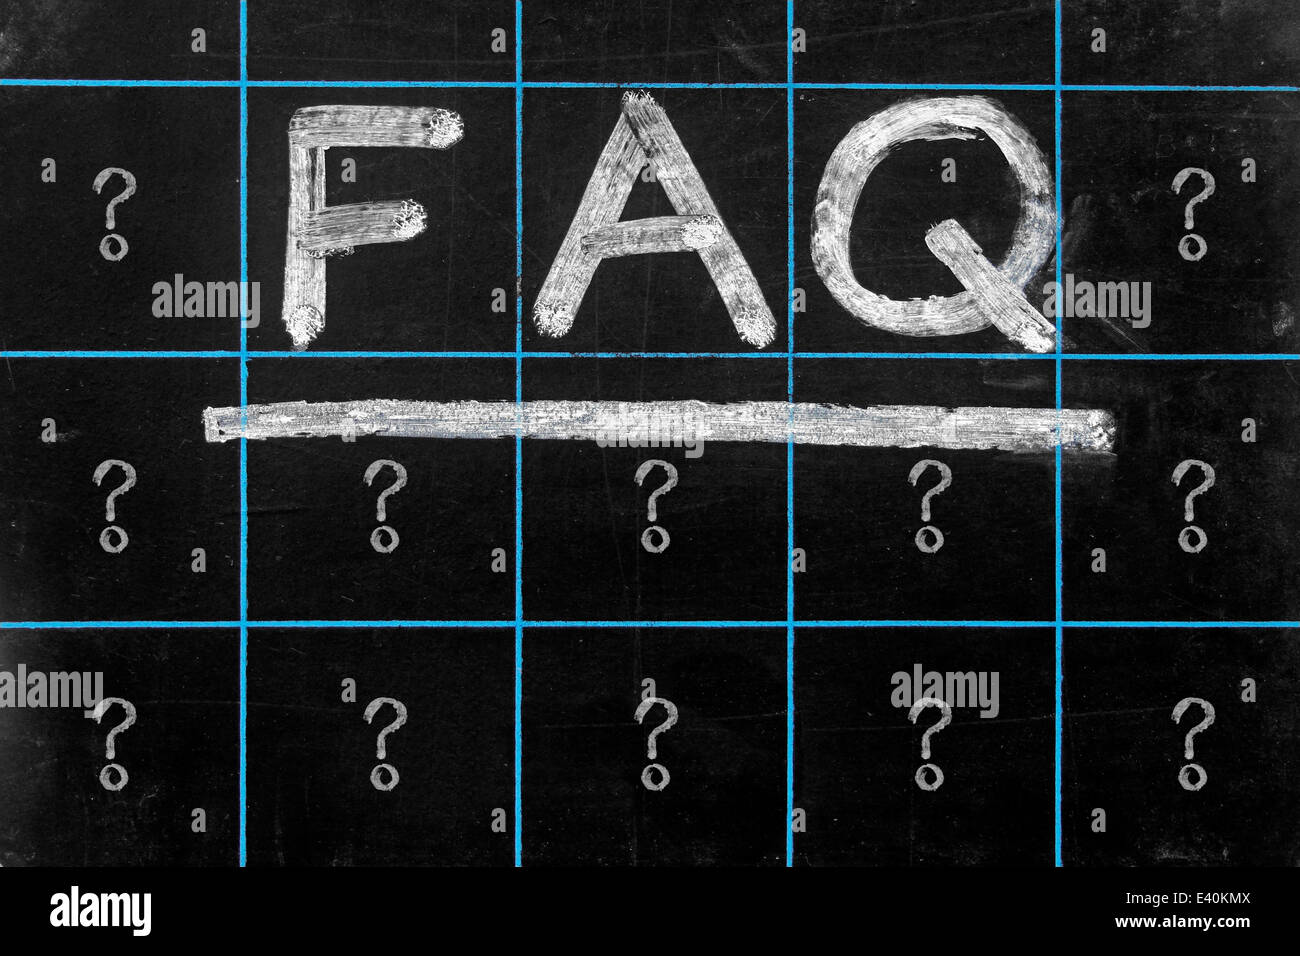 die Abkürzung FAQ handschriftlich auf schwarze Tafel Stockfoto